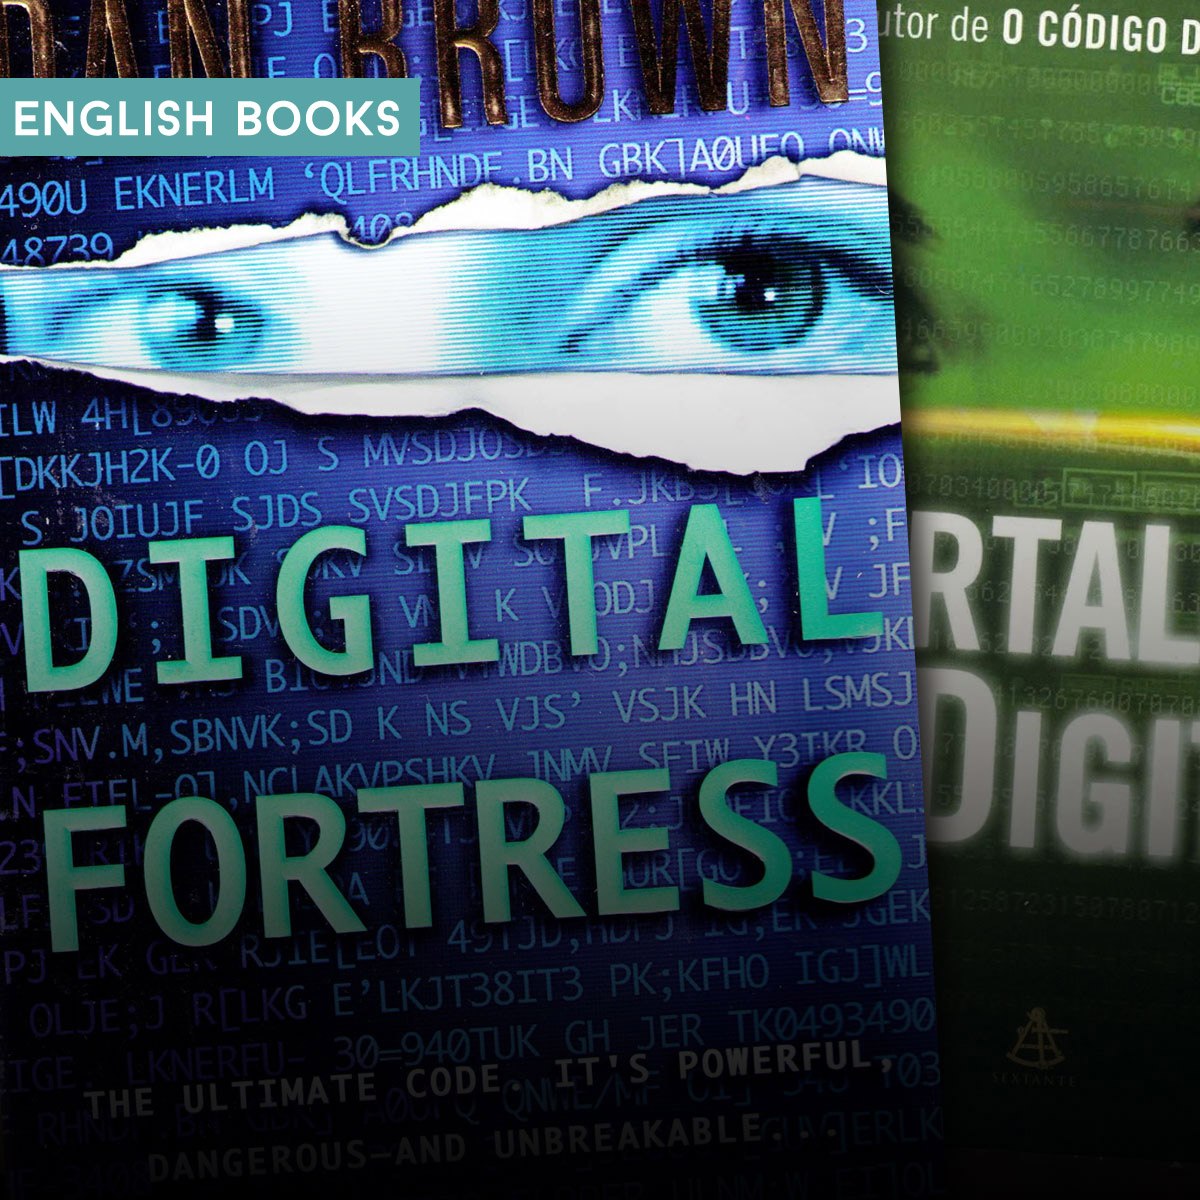 Dan Brown— Digital Fortress